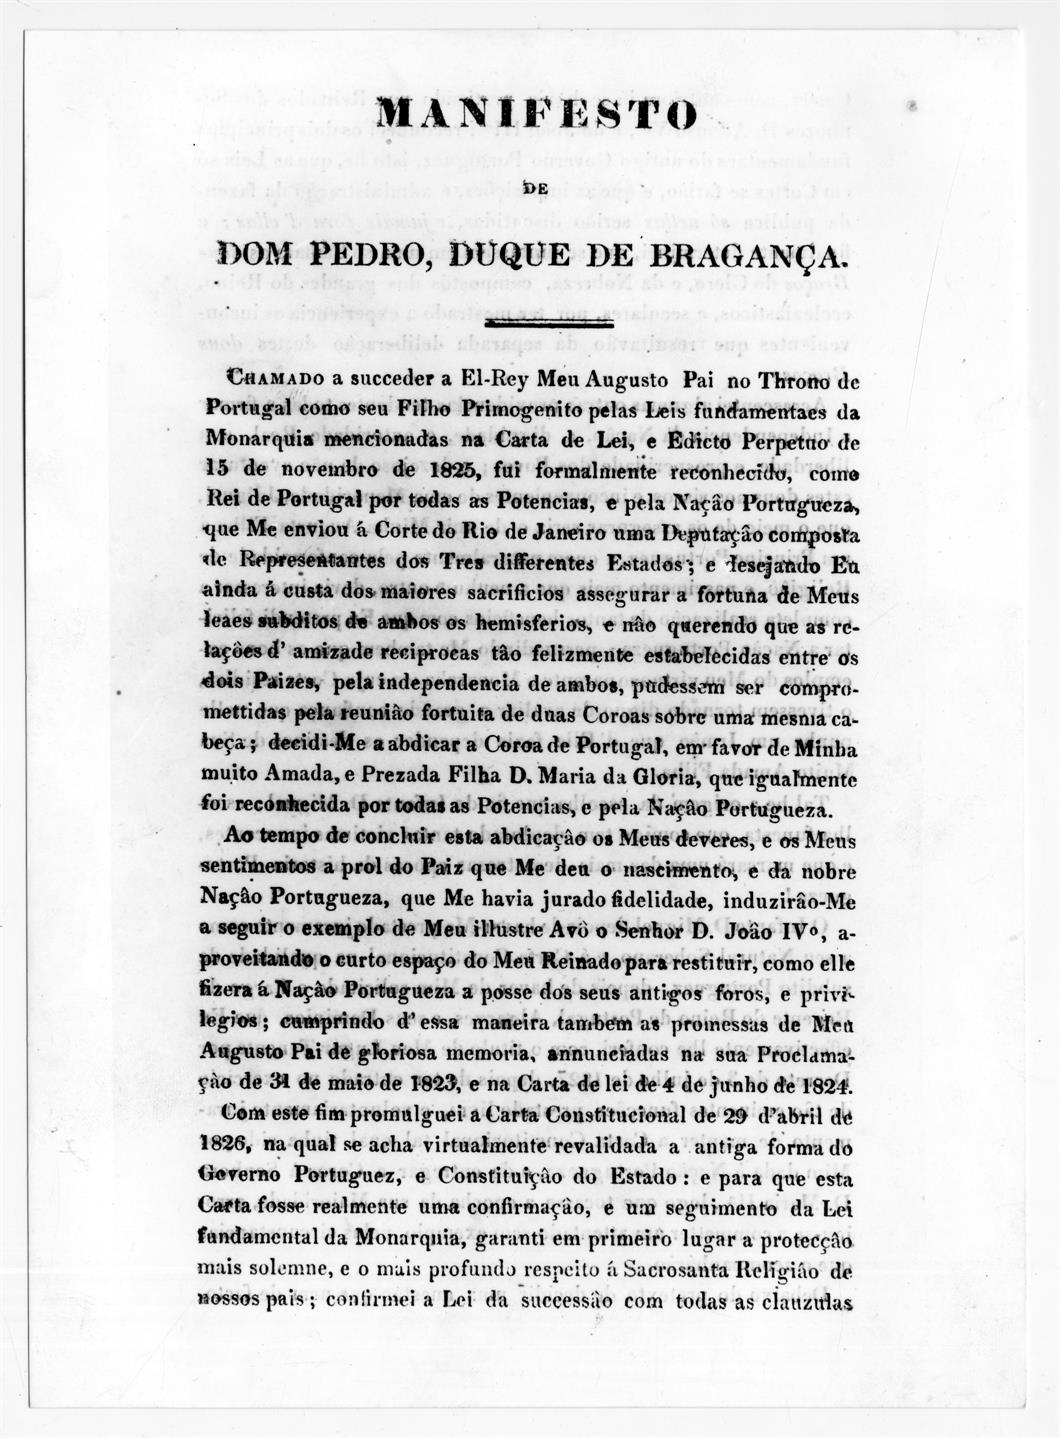 O cerco do Porto : exposição comemorativa do 150º aniversário : Manifesto de D. Pedro Duque de Bragança